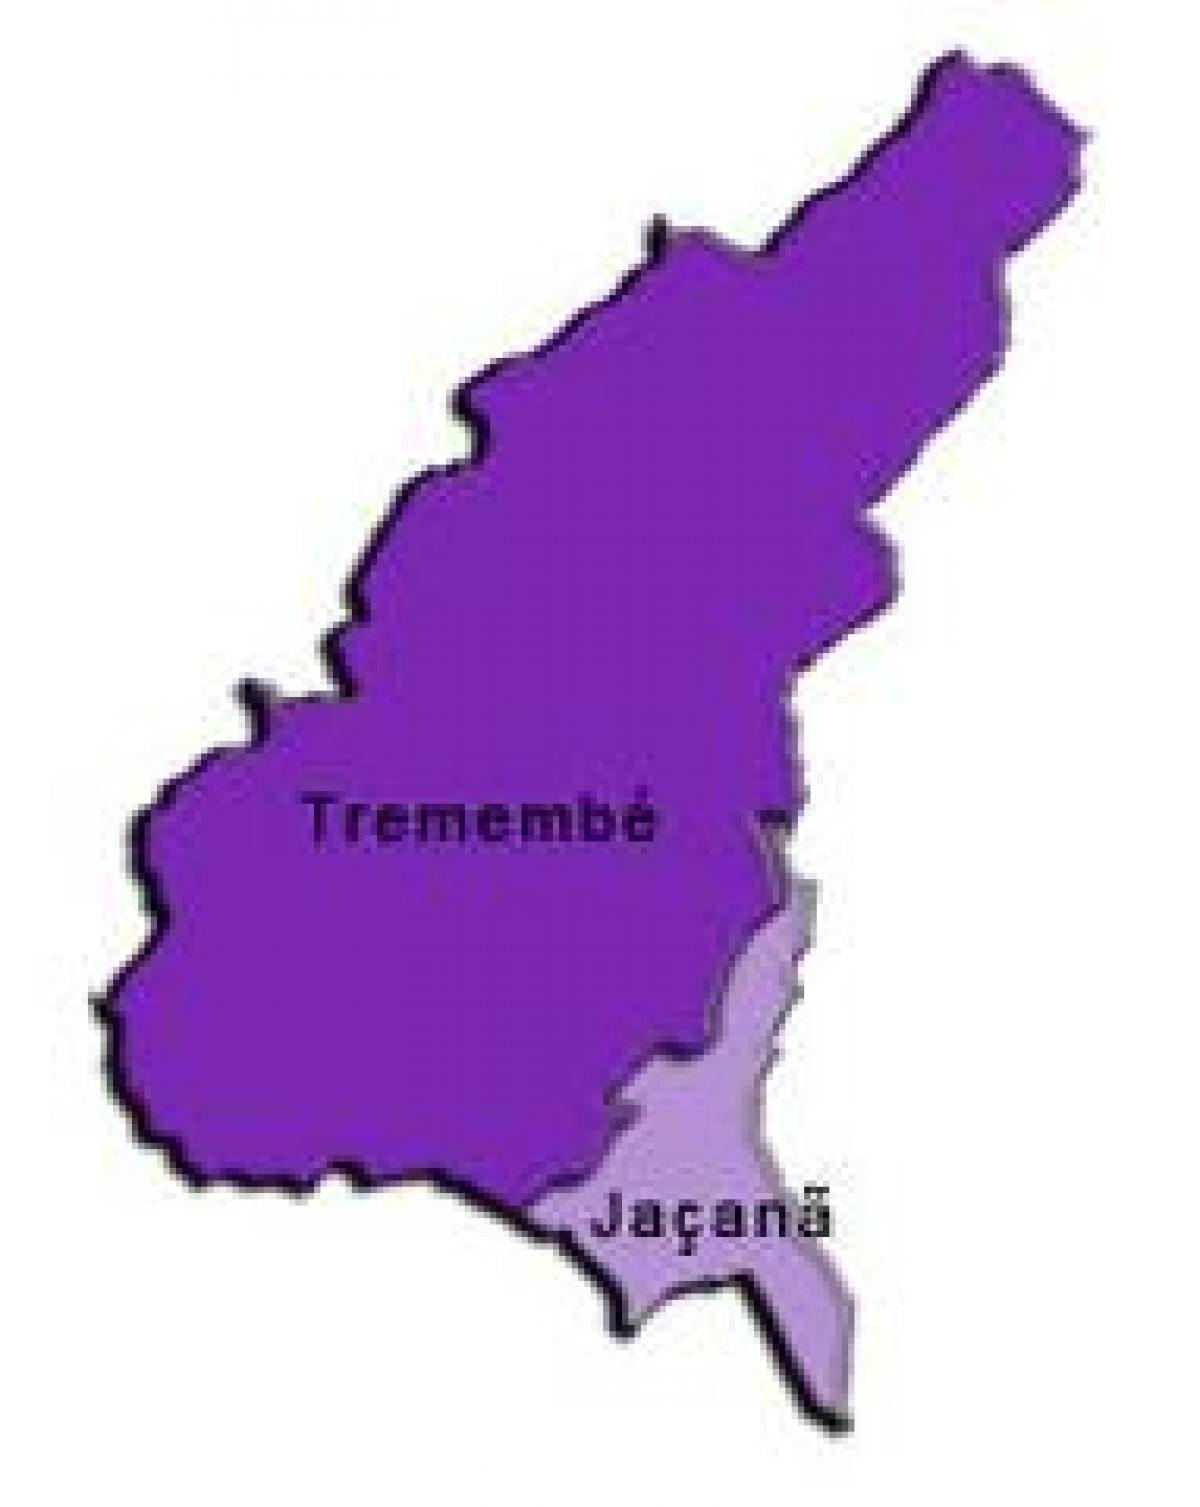 地図Jaçanã-Tremembéサ県